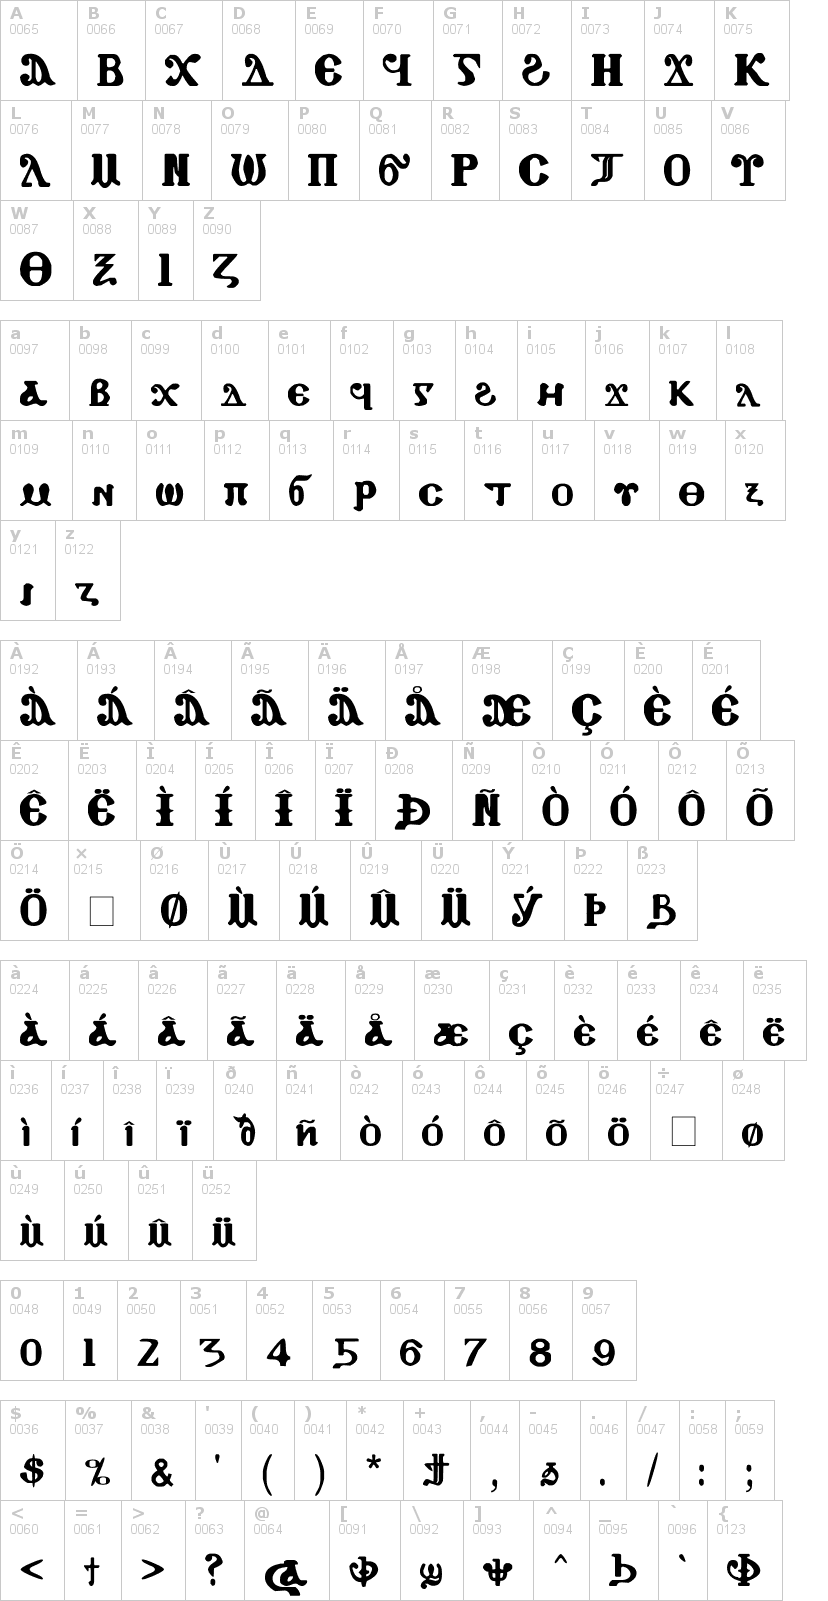 Lettere dell'alfabeto del font coptic-eyes-coptic con le quali è possibile realizzare adesivi prespaziati